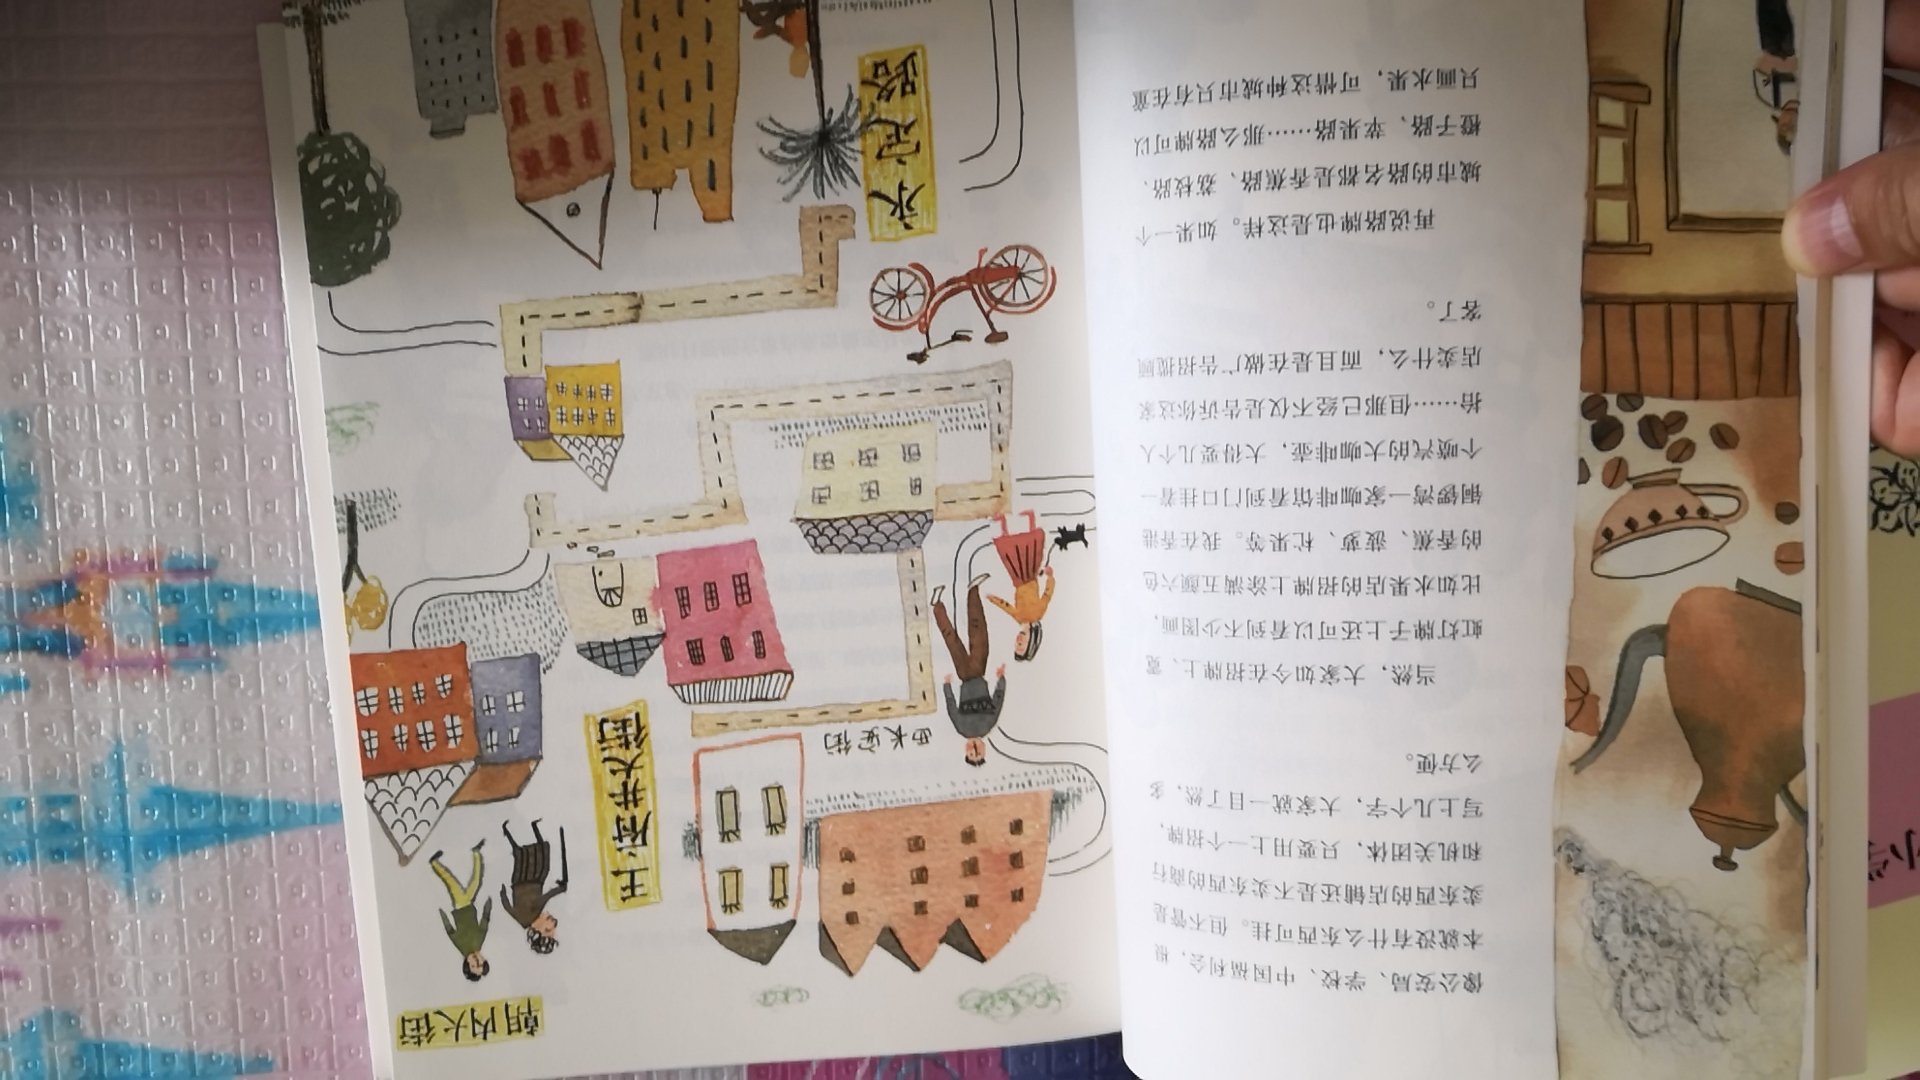 这本书是在书店里看到的，重新认识一下汉字挺好。物流给力